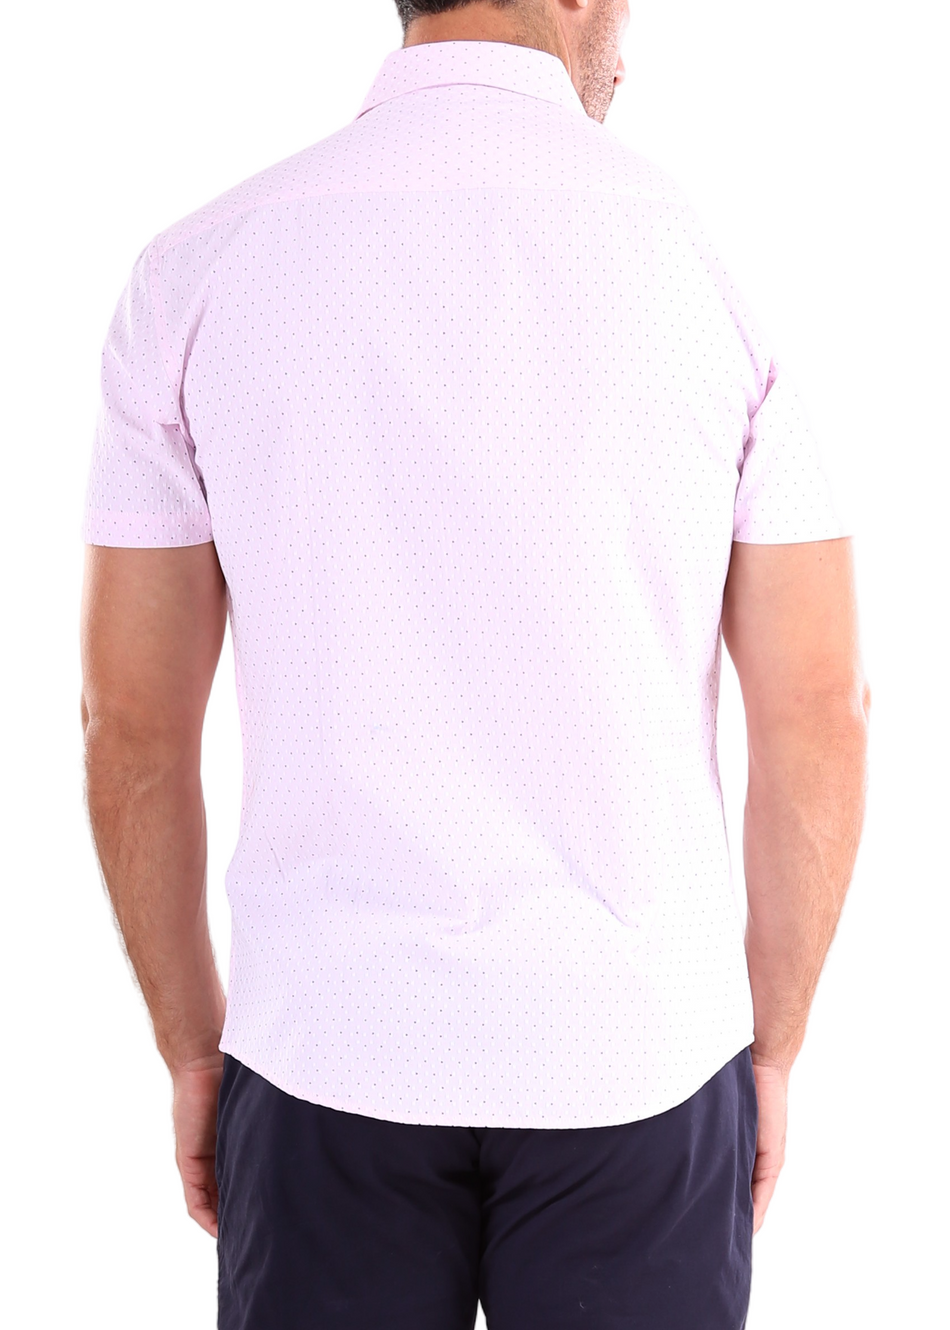 Pink Texture Short Sleeve Dress Shirt